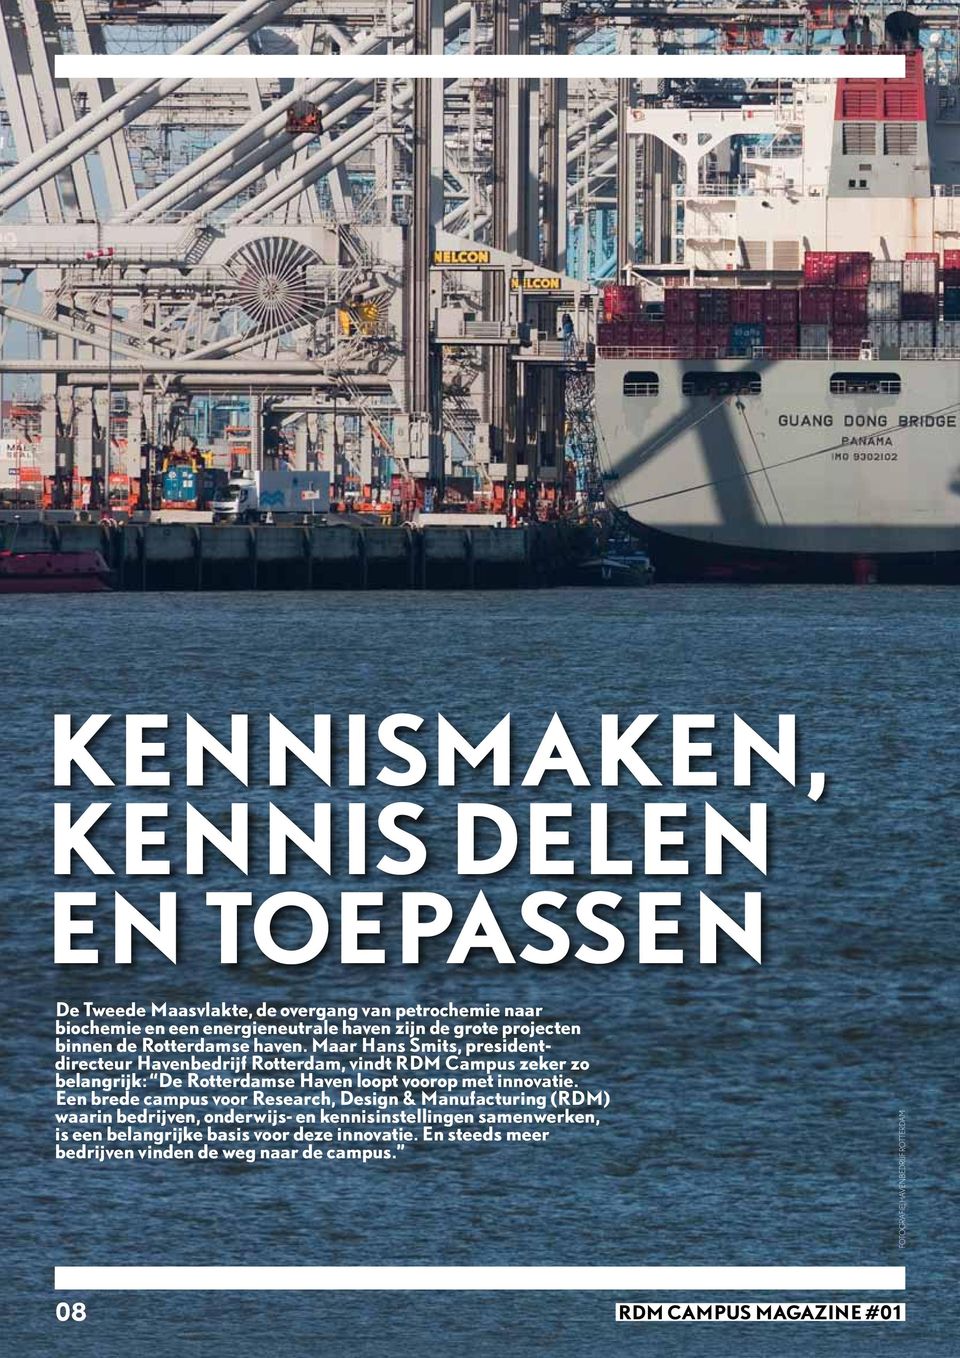 Maar Hans Smits, presidentdirecteur Havenbedrijf Rotterdam, vindt RDM Campus zeker zo belangrijk: De Rotterdamse Haven loopt voorop met innovatie.